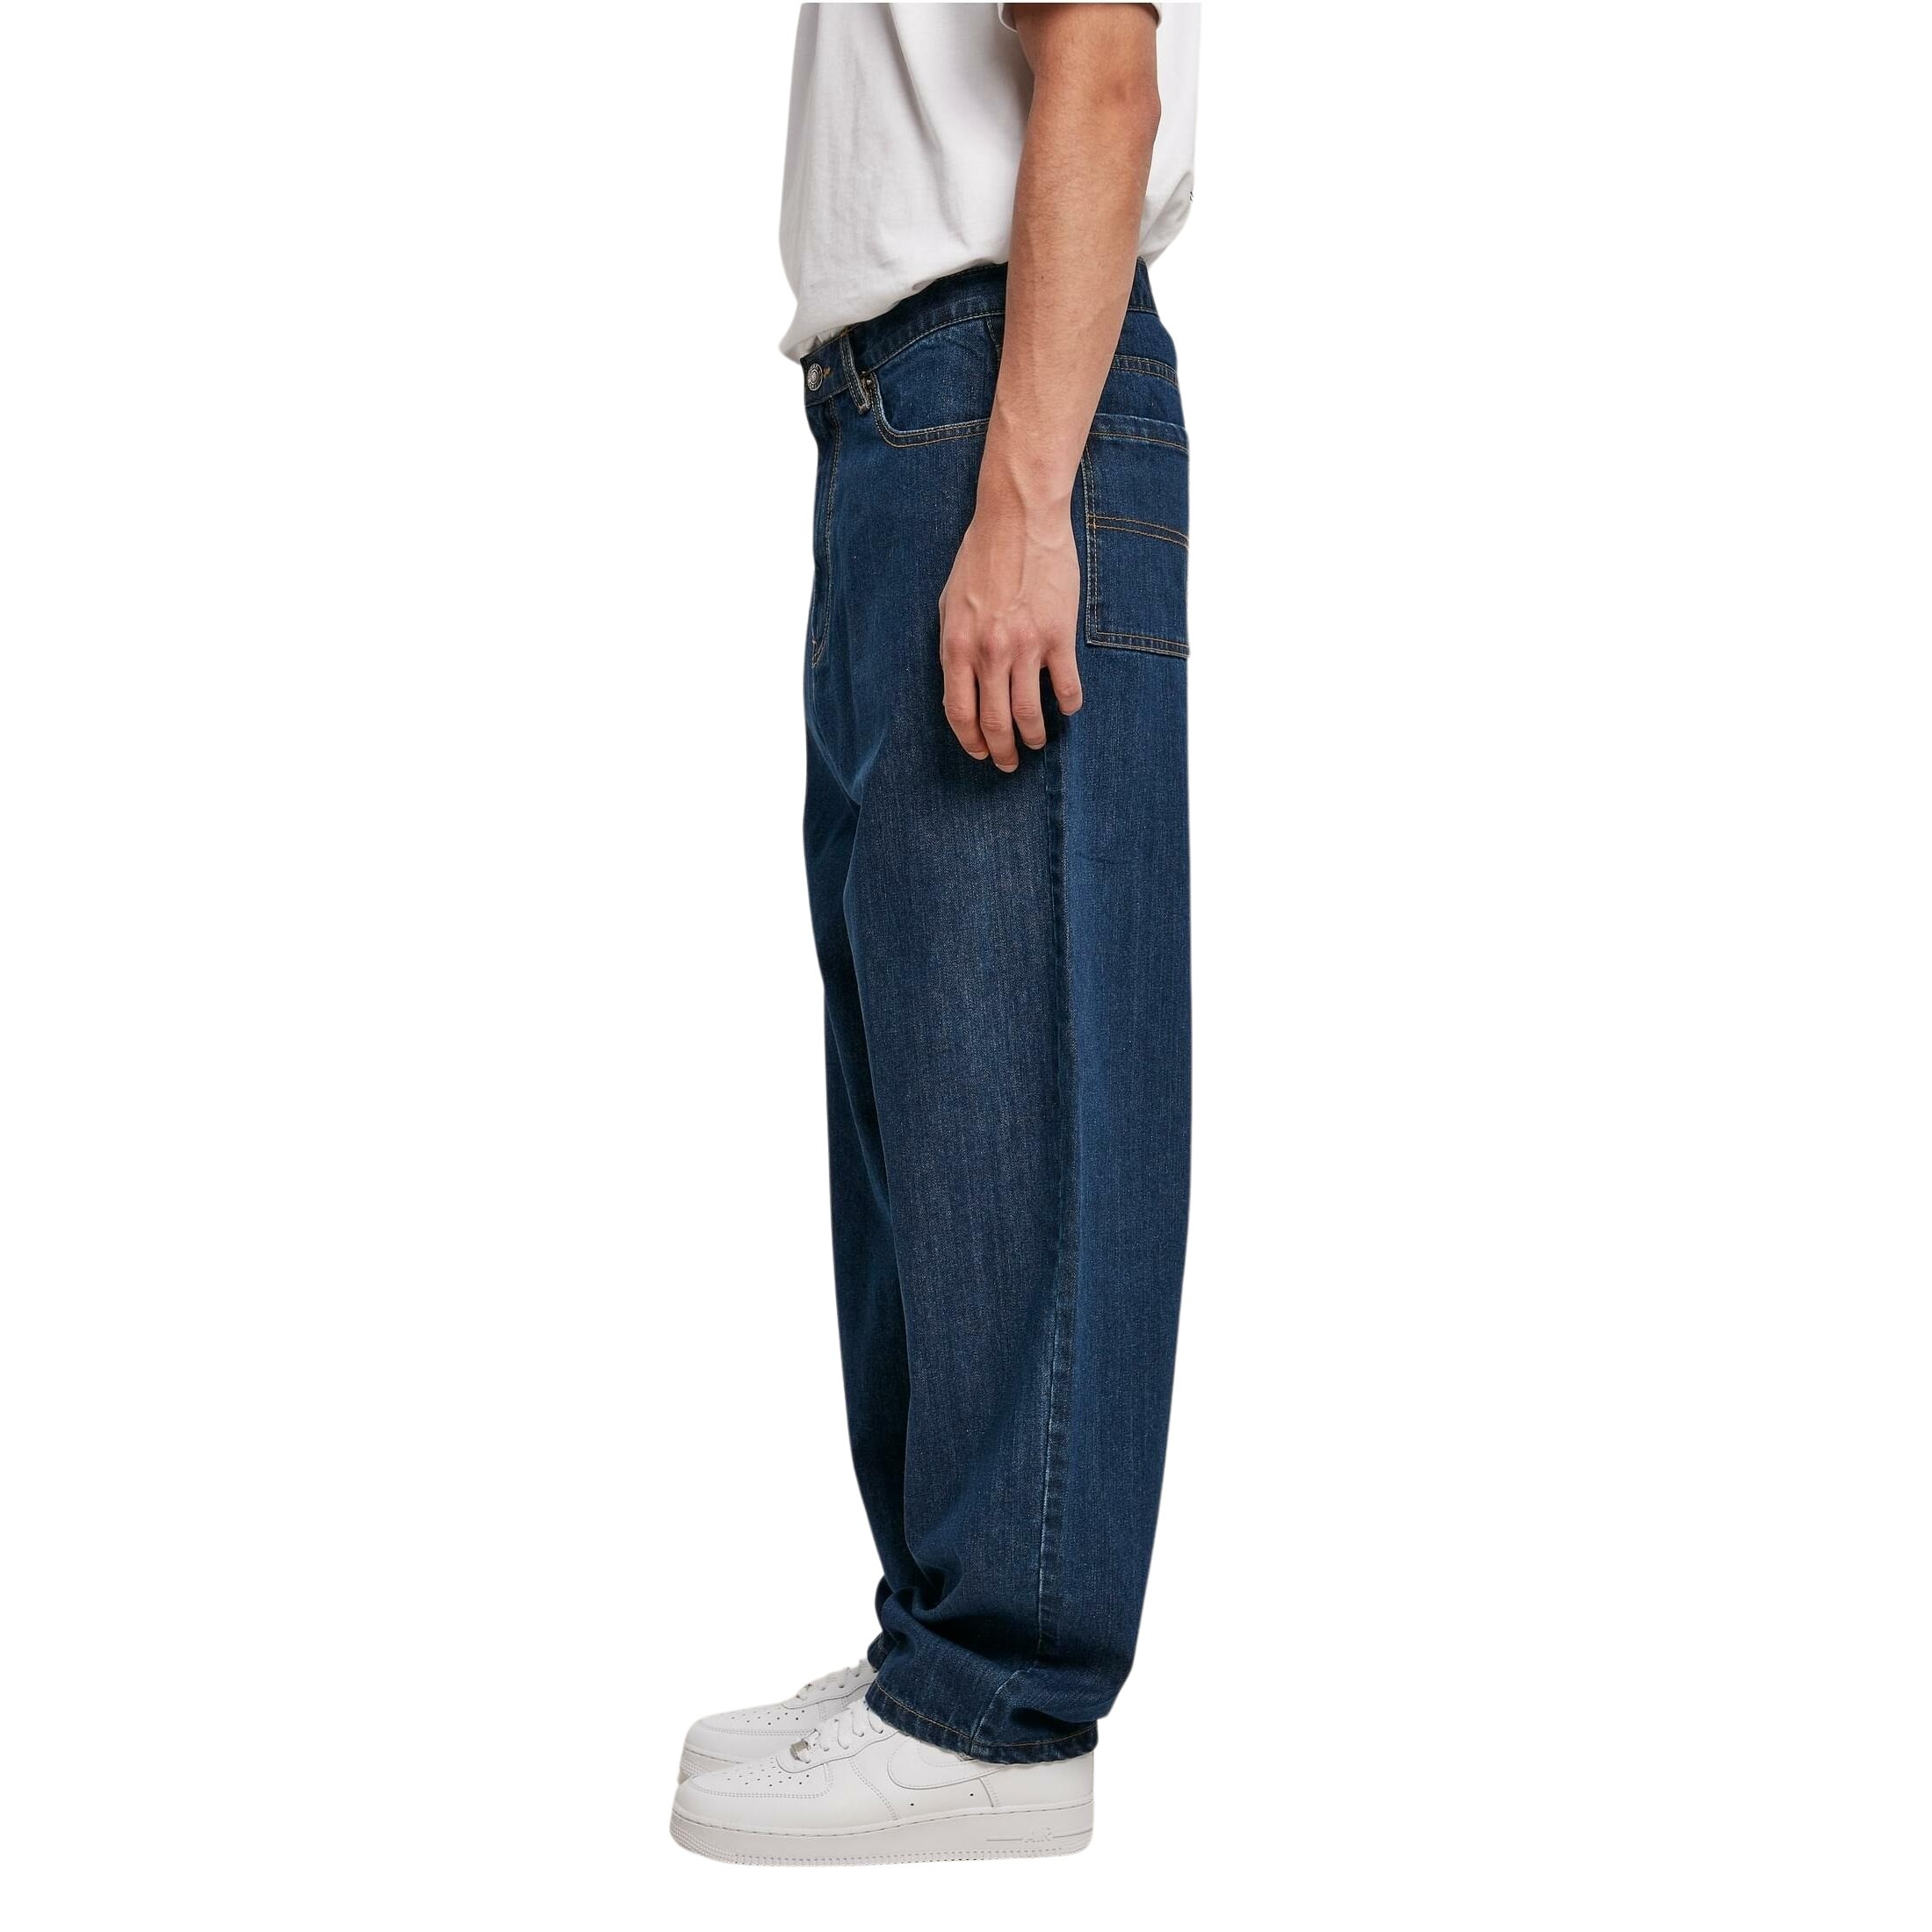 Pantalones Vaqueros URBAN CLASSICS Homem (32 - Azul)